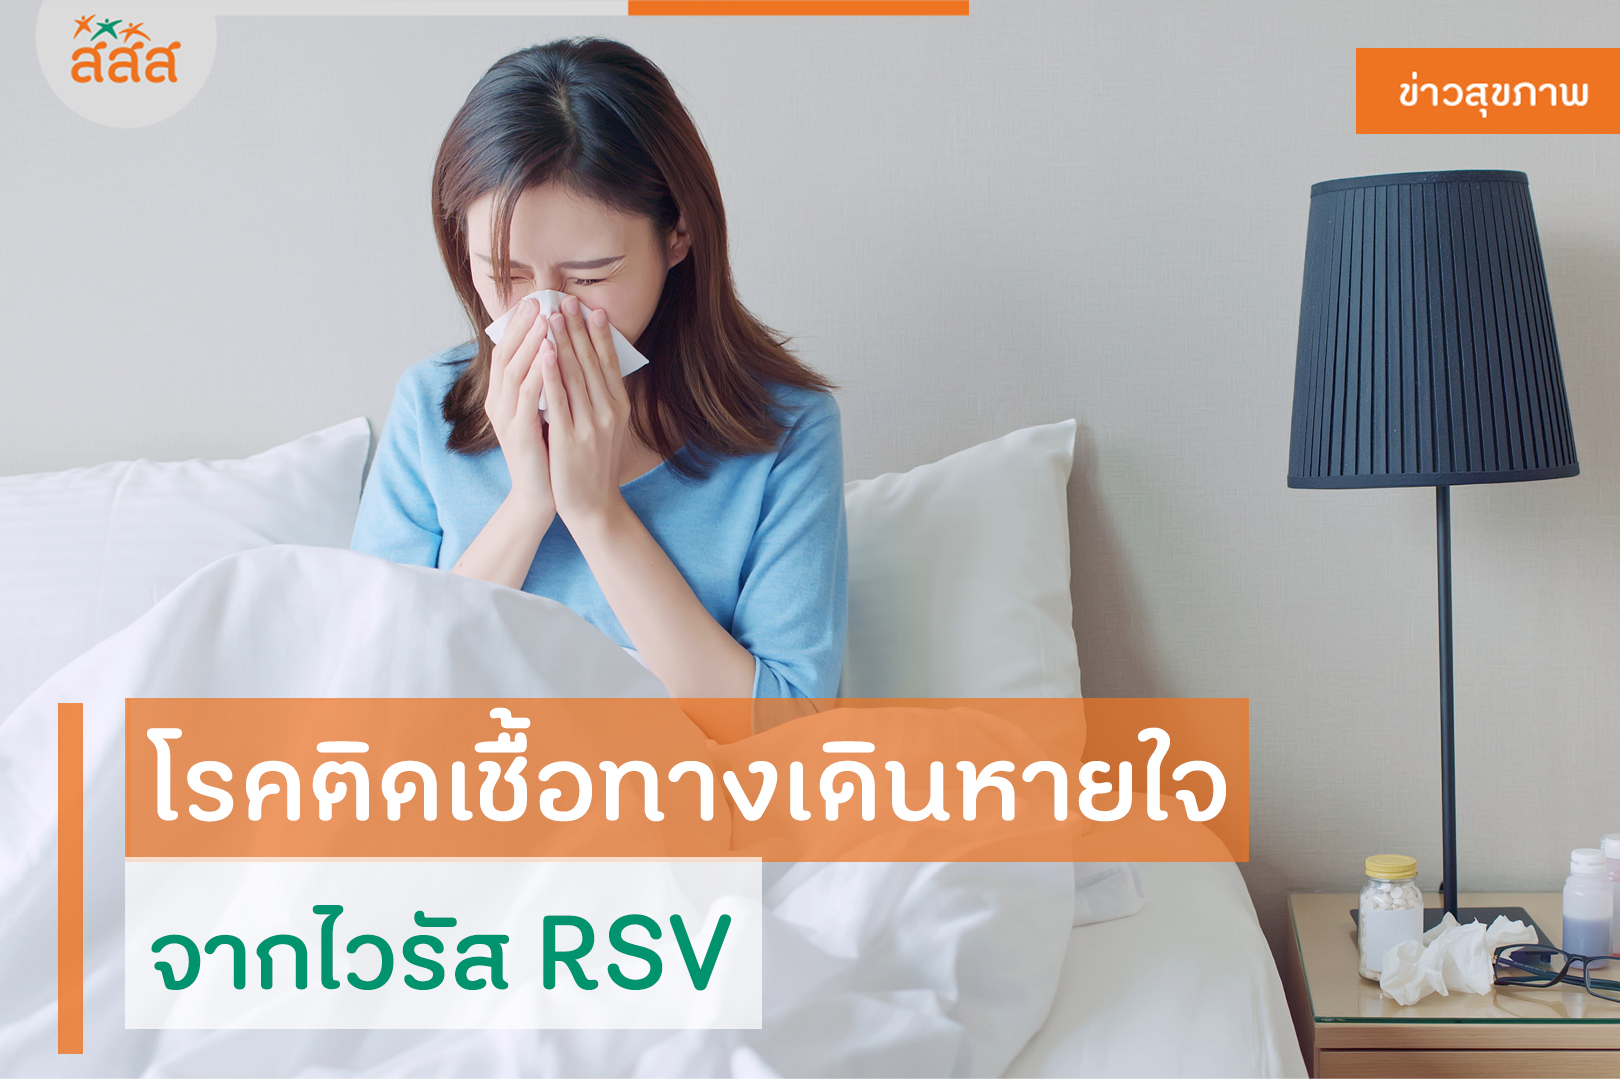 โรคติดเชื้อทางเดินหายใจจากไวรัส RSV thaihealth